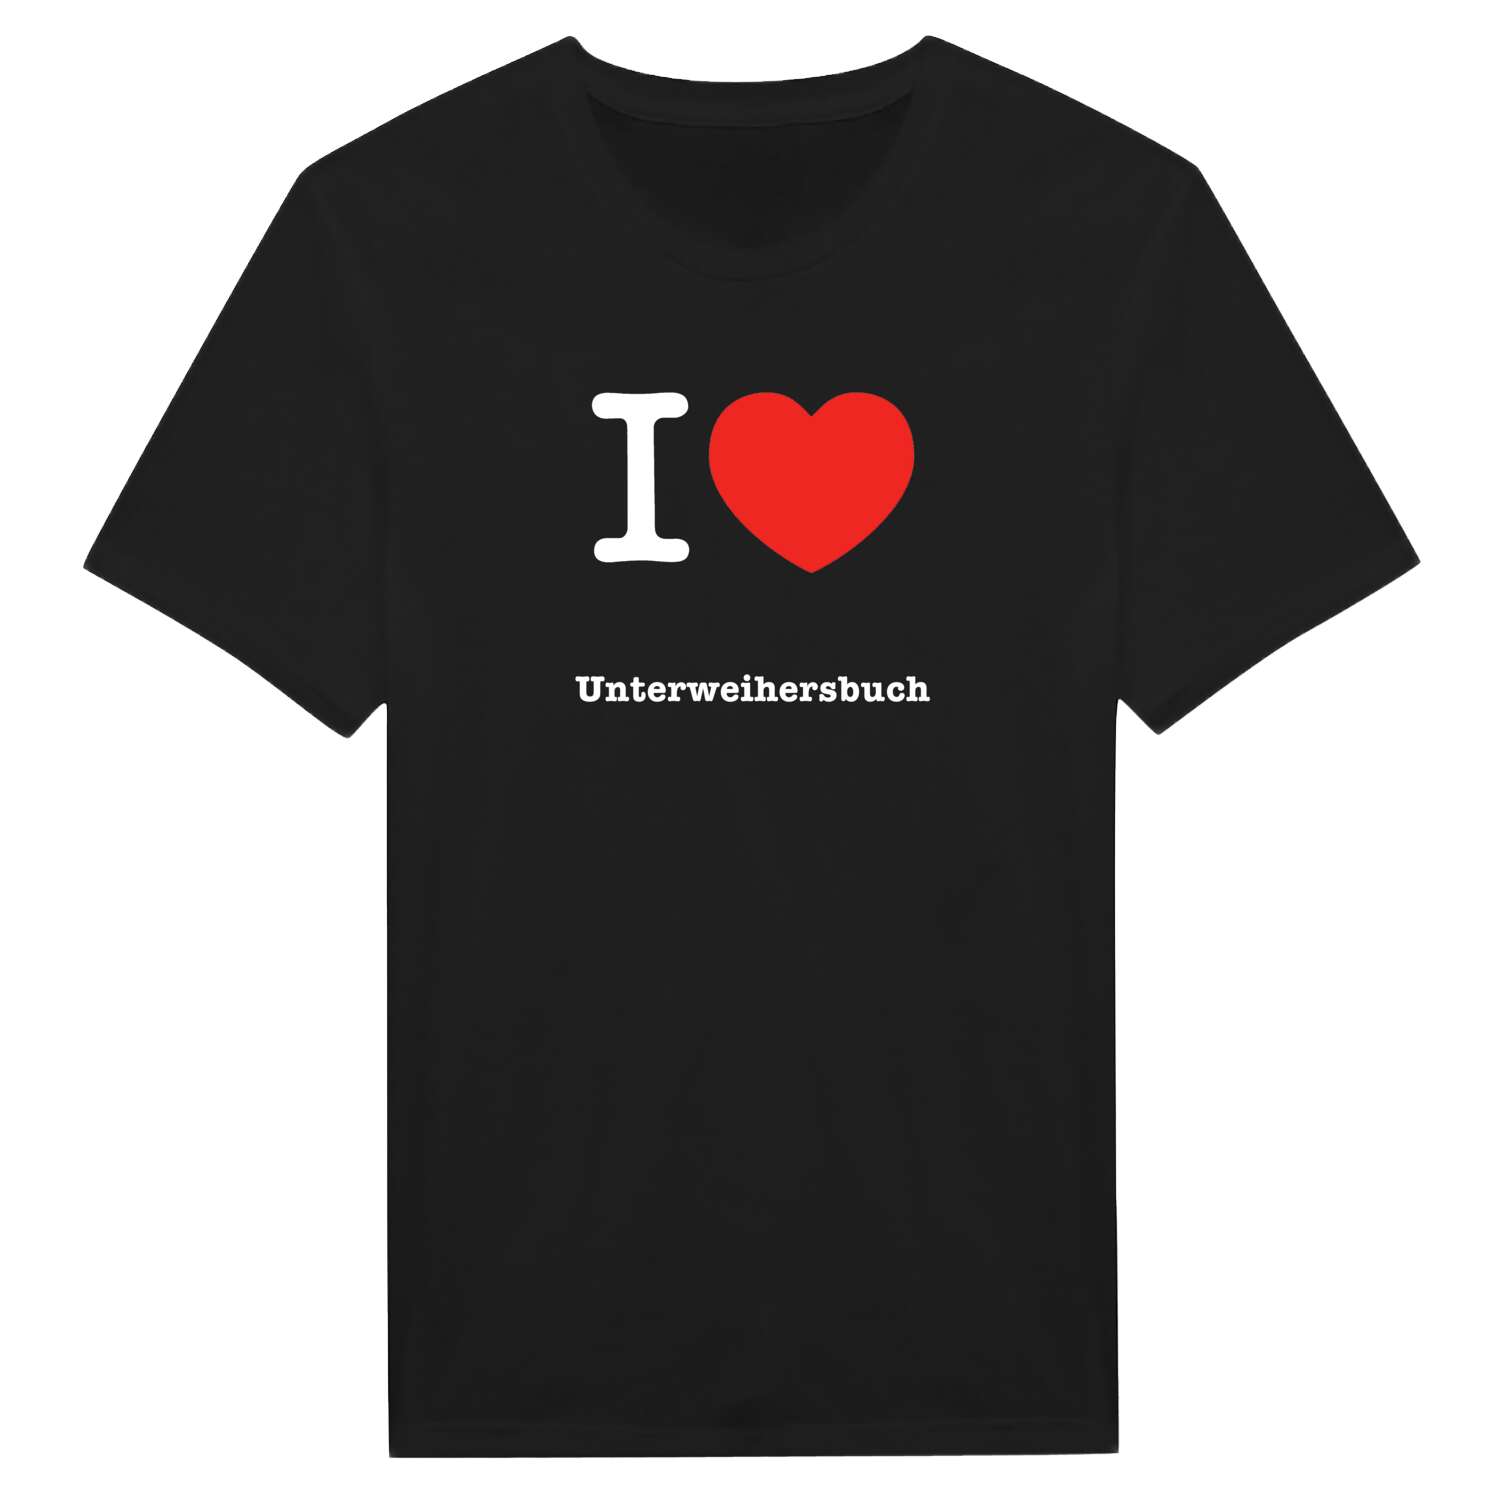 Unterweihersbuch T-Shirt »I love«